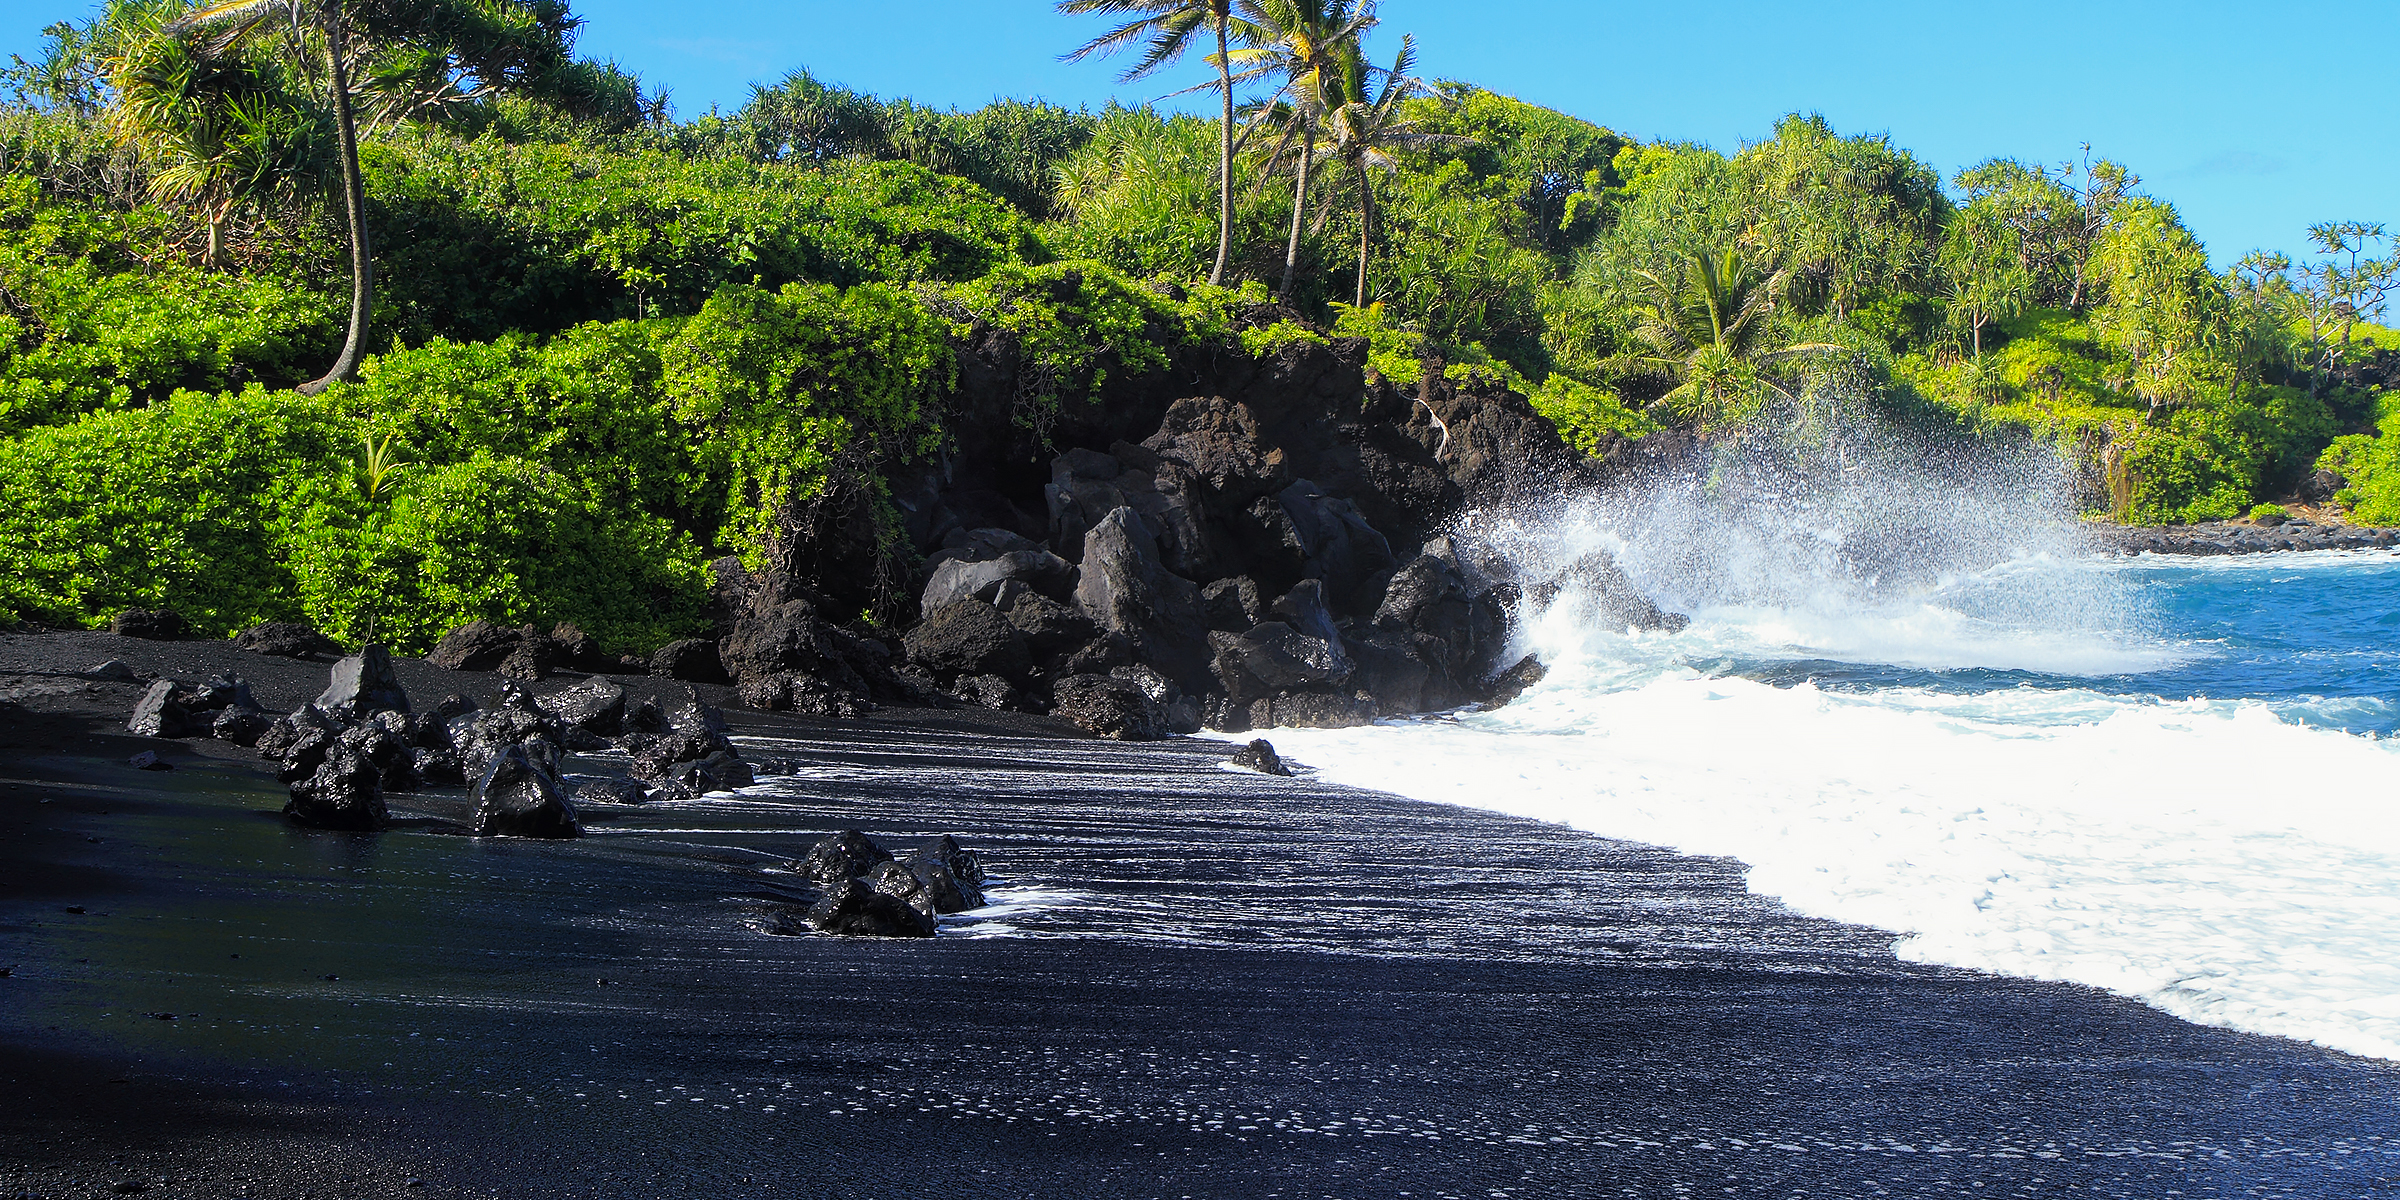 Honomanu black sand beach in Maui | Source: Shutterstock